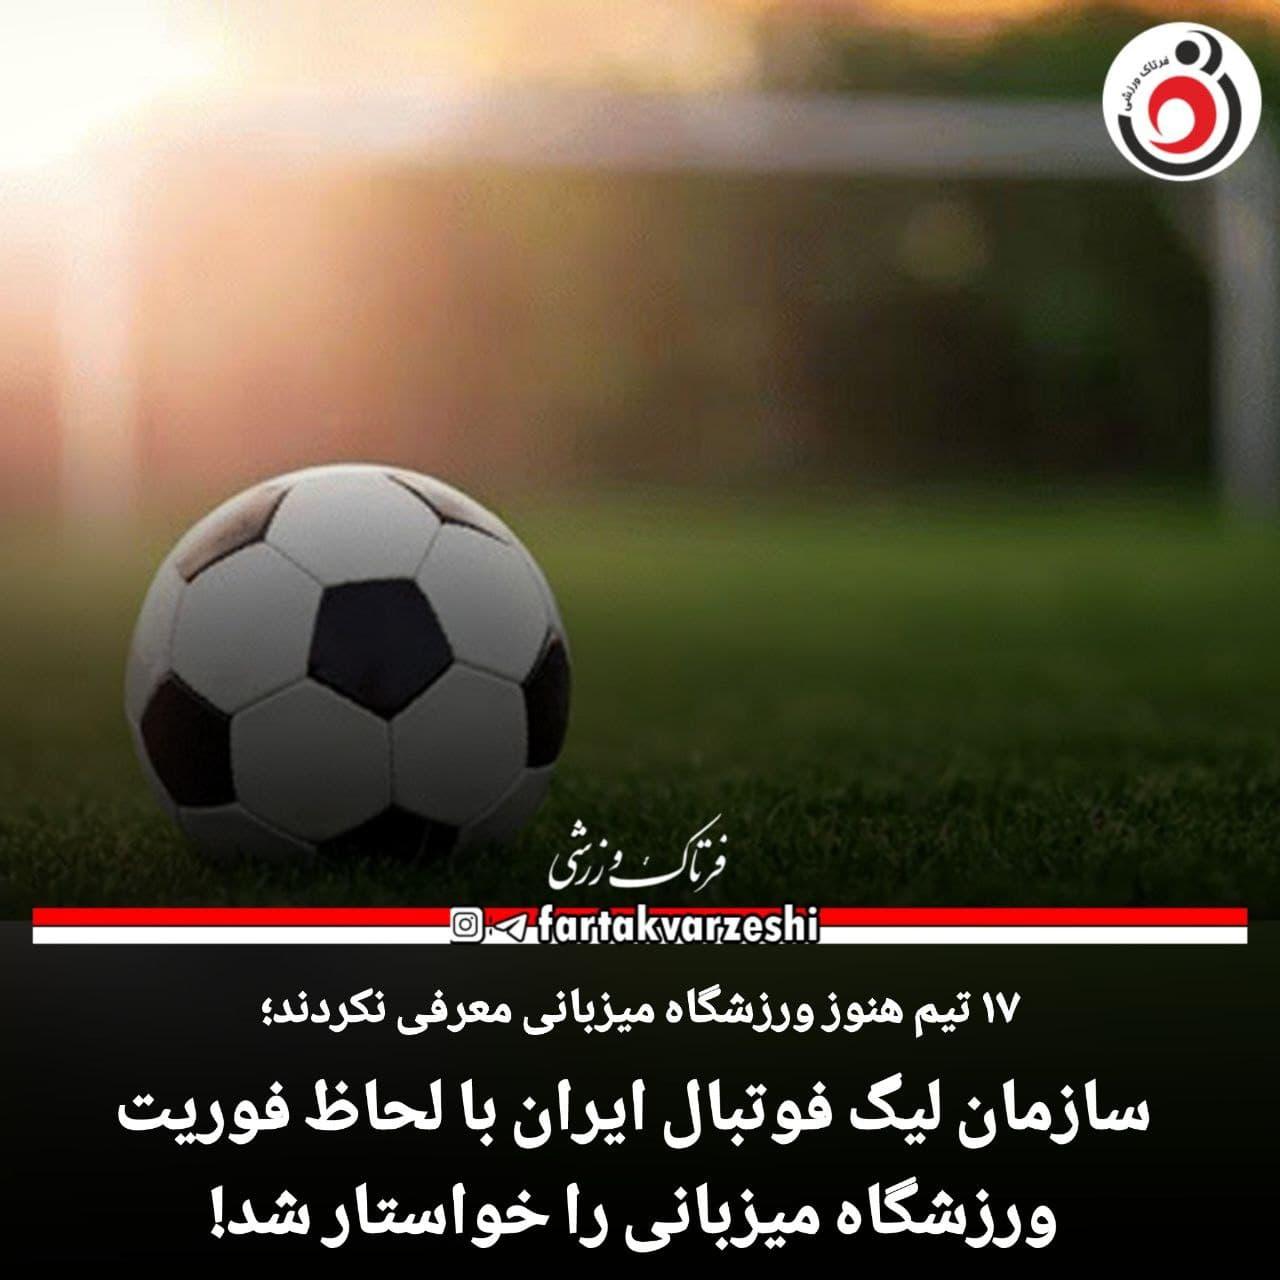 سازمان لیگ فوتبال ایران با لحاظ فوریت ورزشگاه میزبانی را خواستار شد!